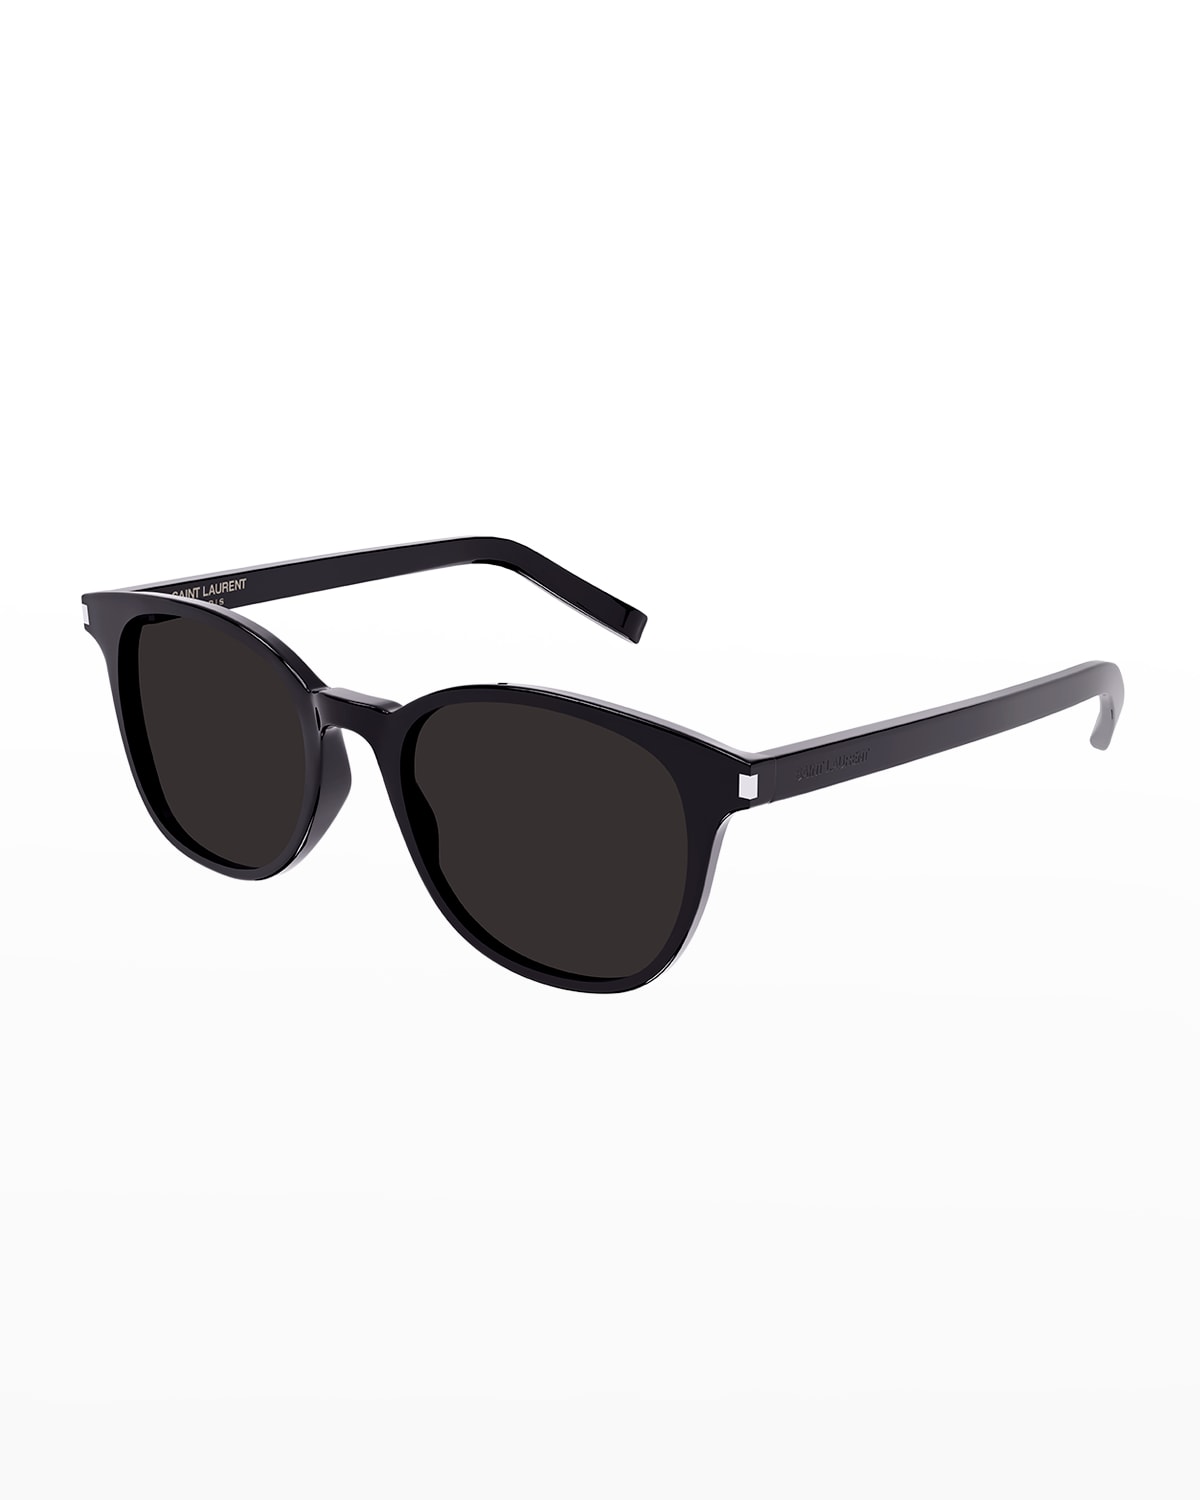 Saint Laurent Zoe Round Acetate Sunglasses In 001 Black